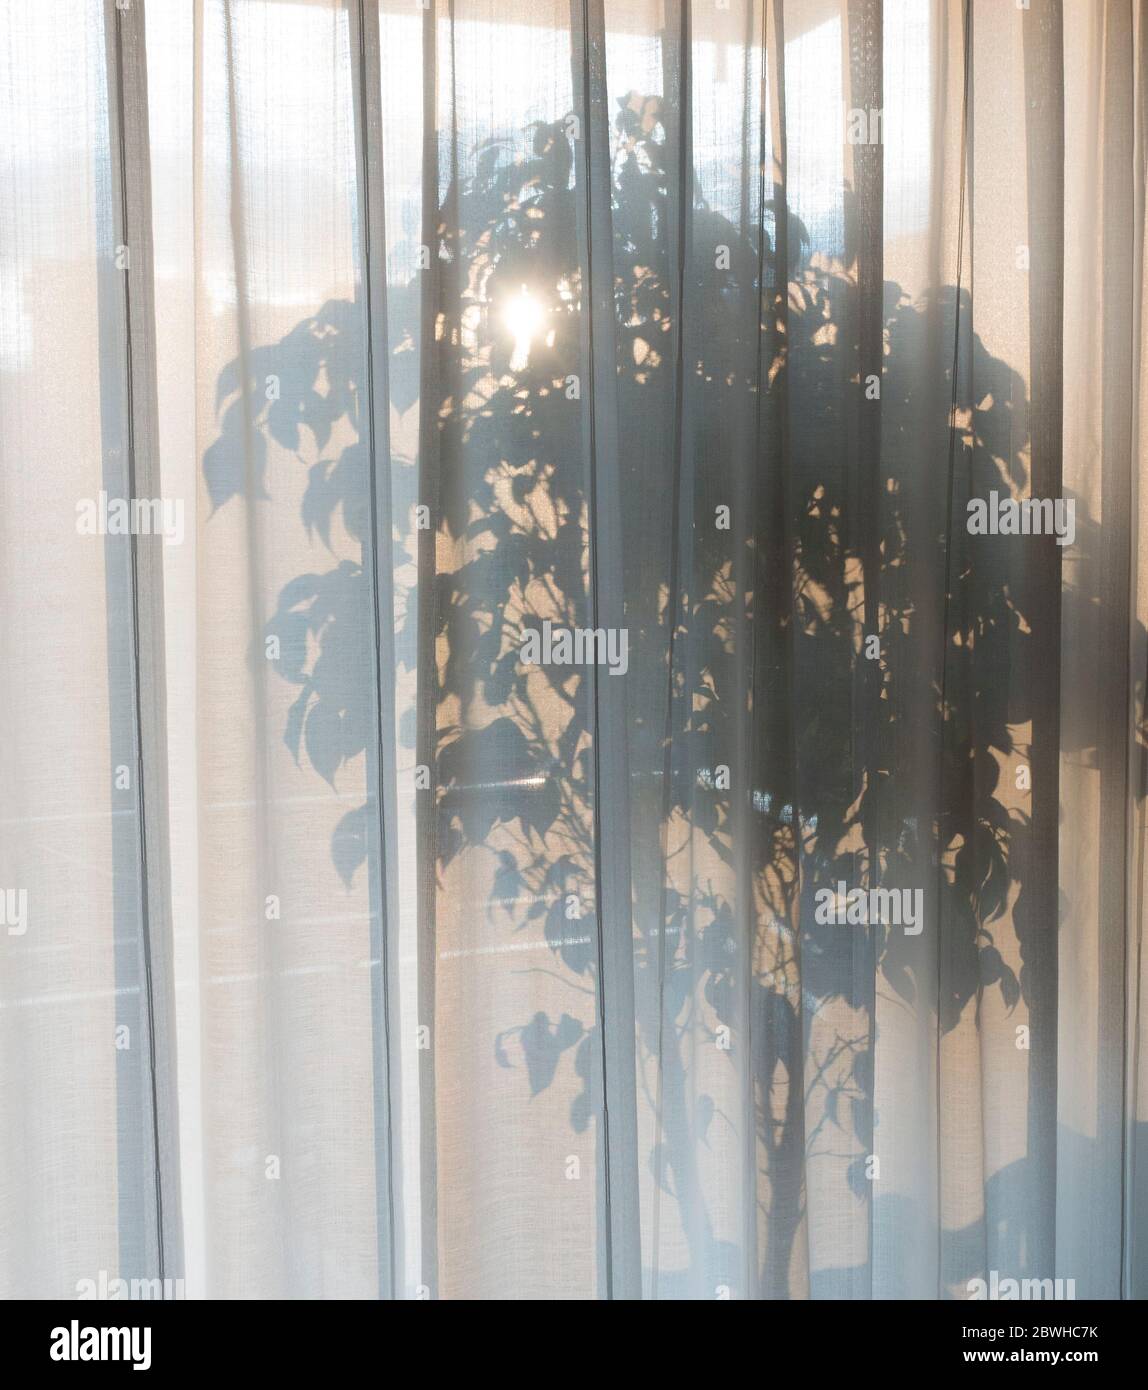 Planta de sala tranquila vista a través de cortinas transparentes Foto de stock